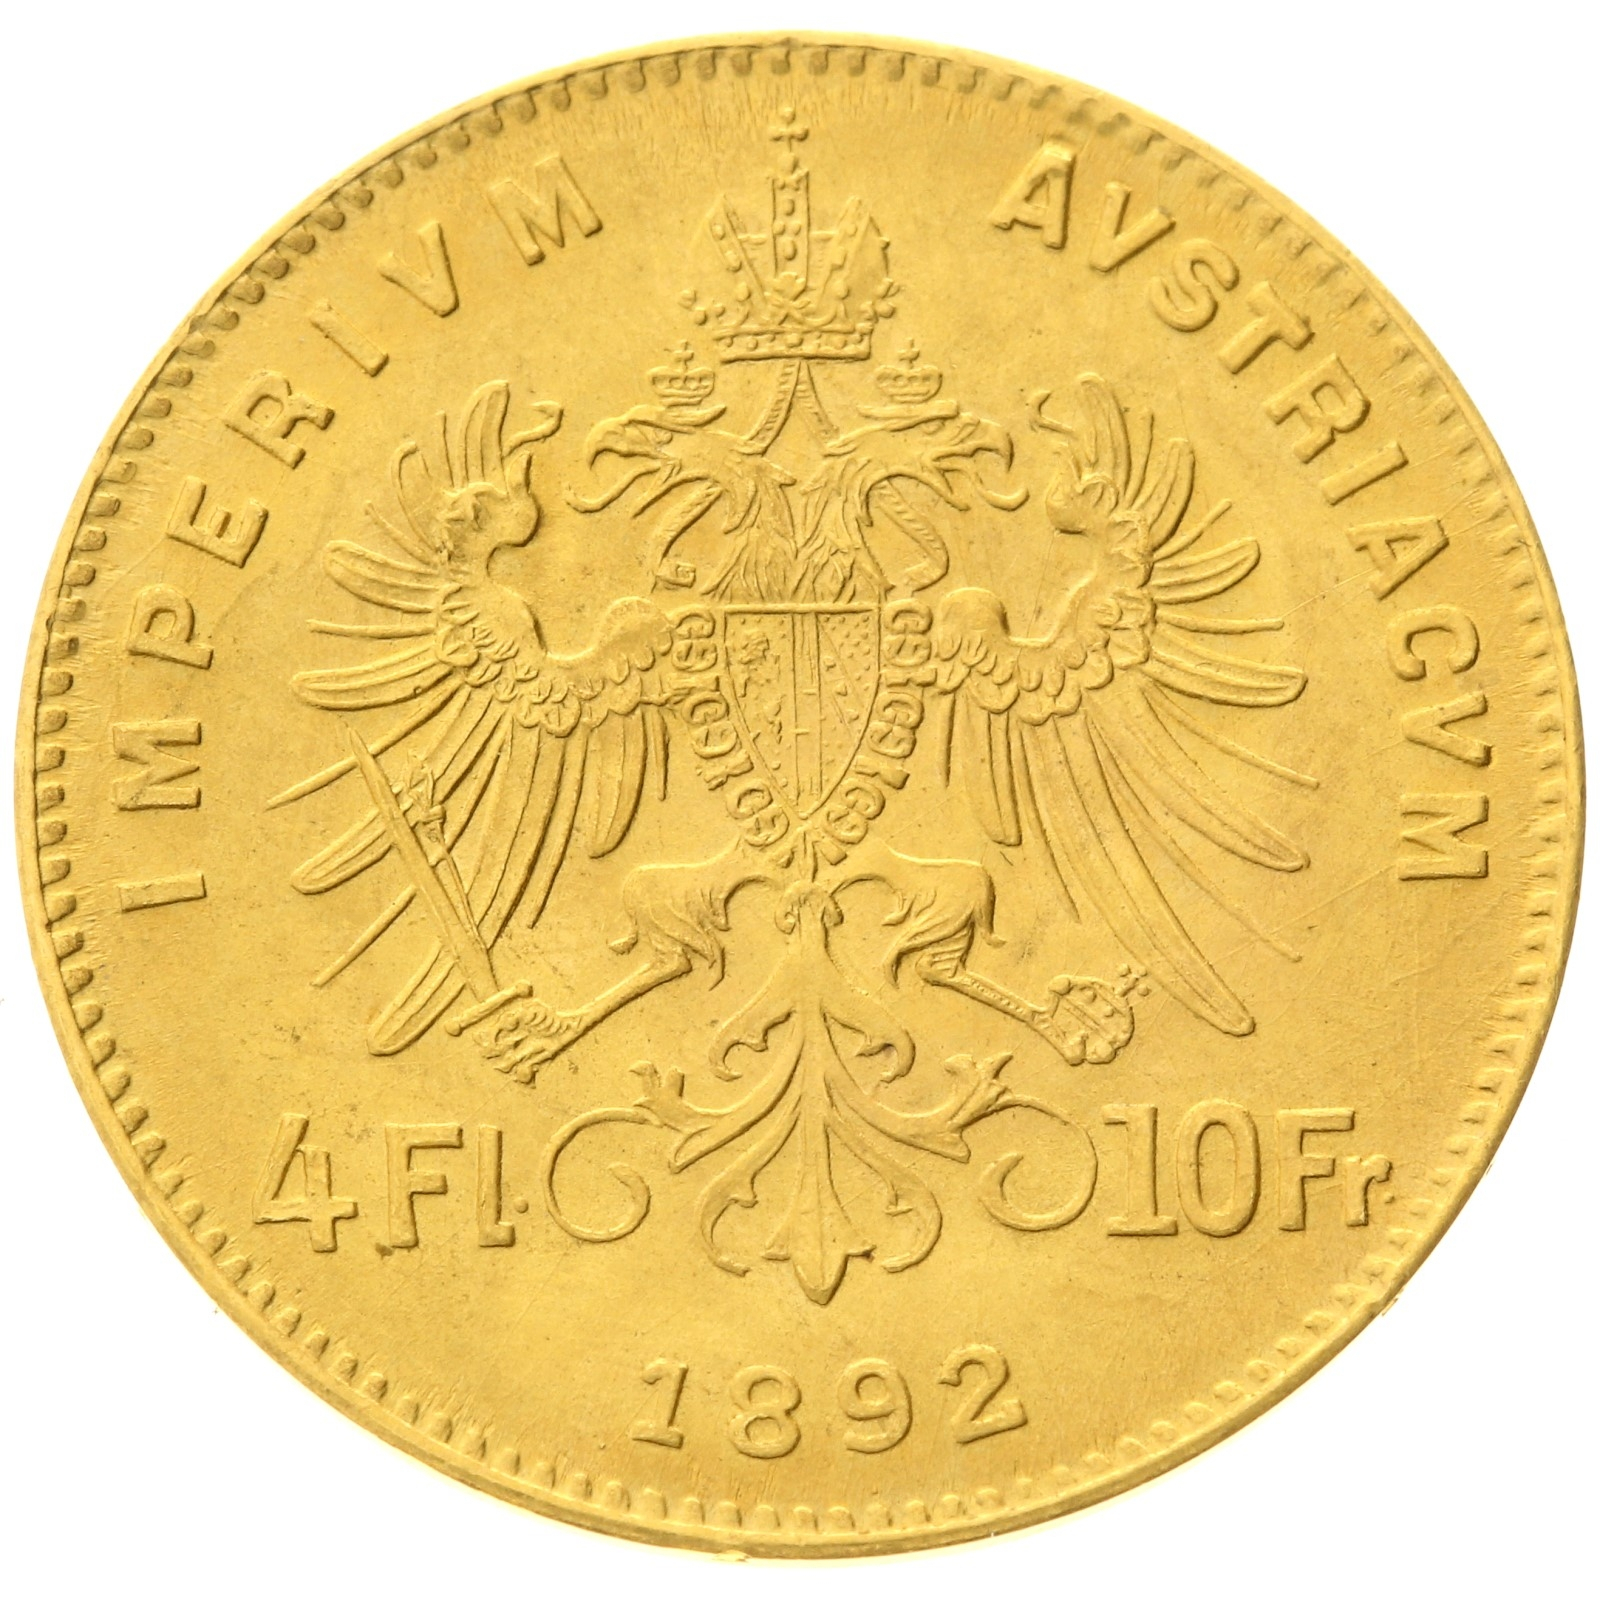 Austria - 4 florins / 10 francs - 1892 - Franz Joseph I - RESTRIKE